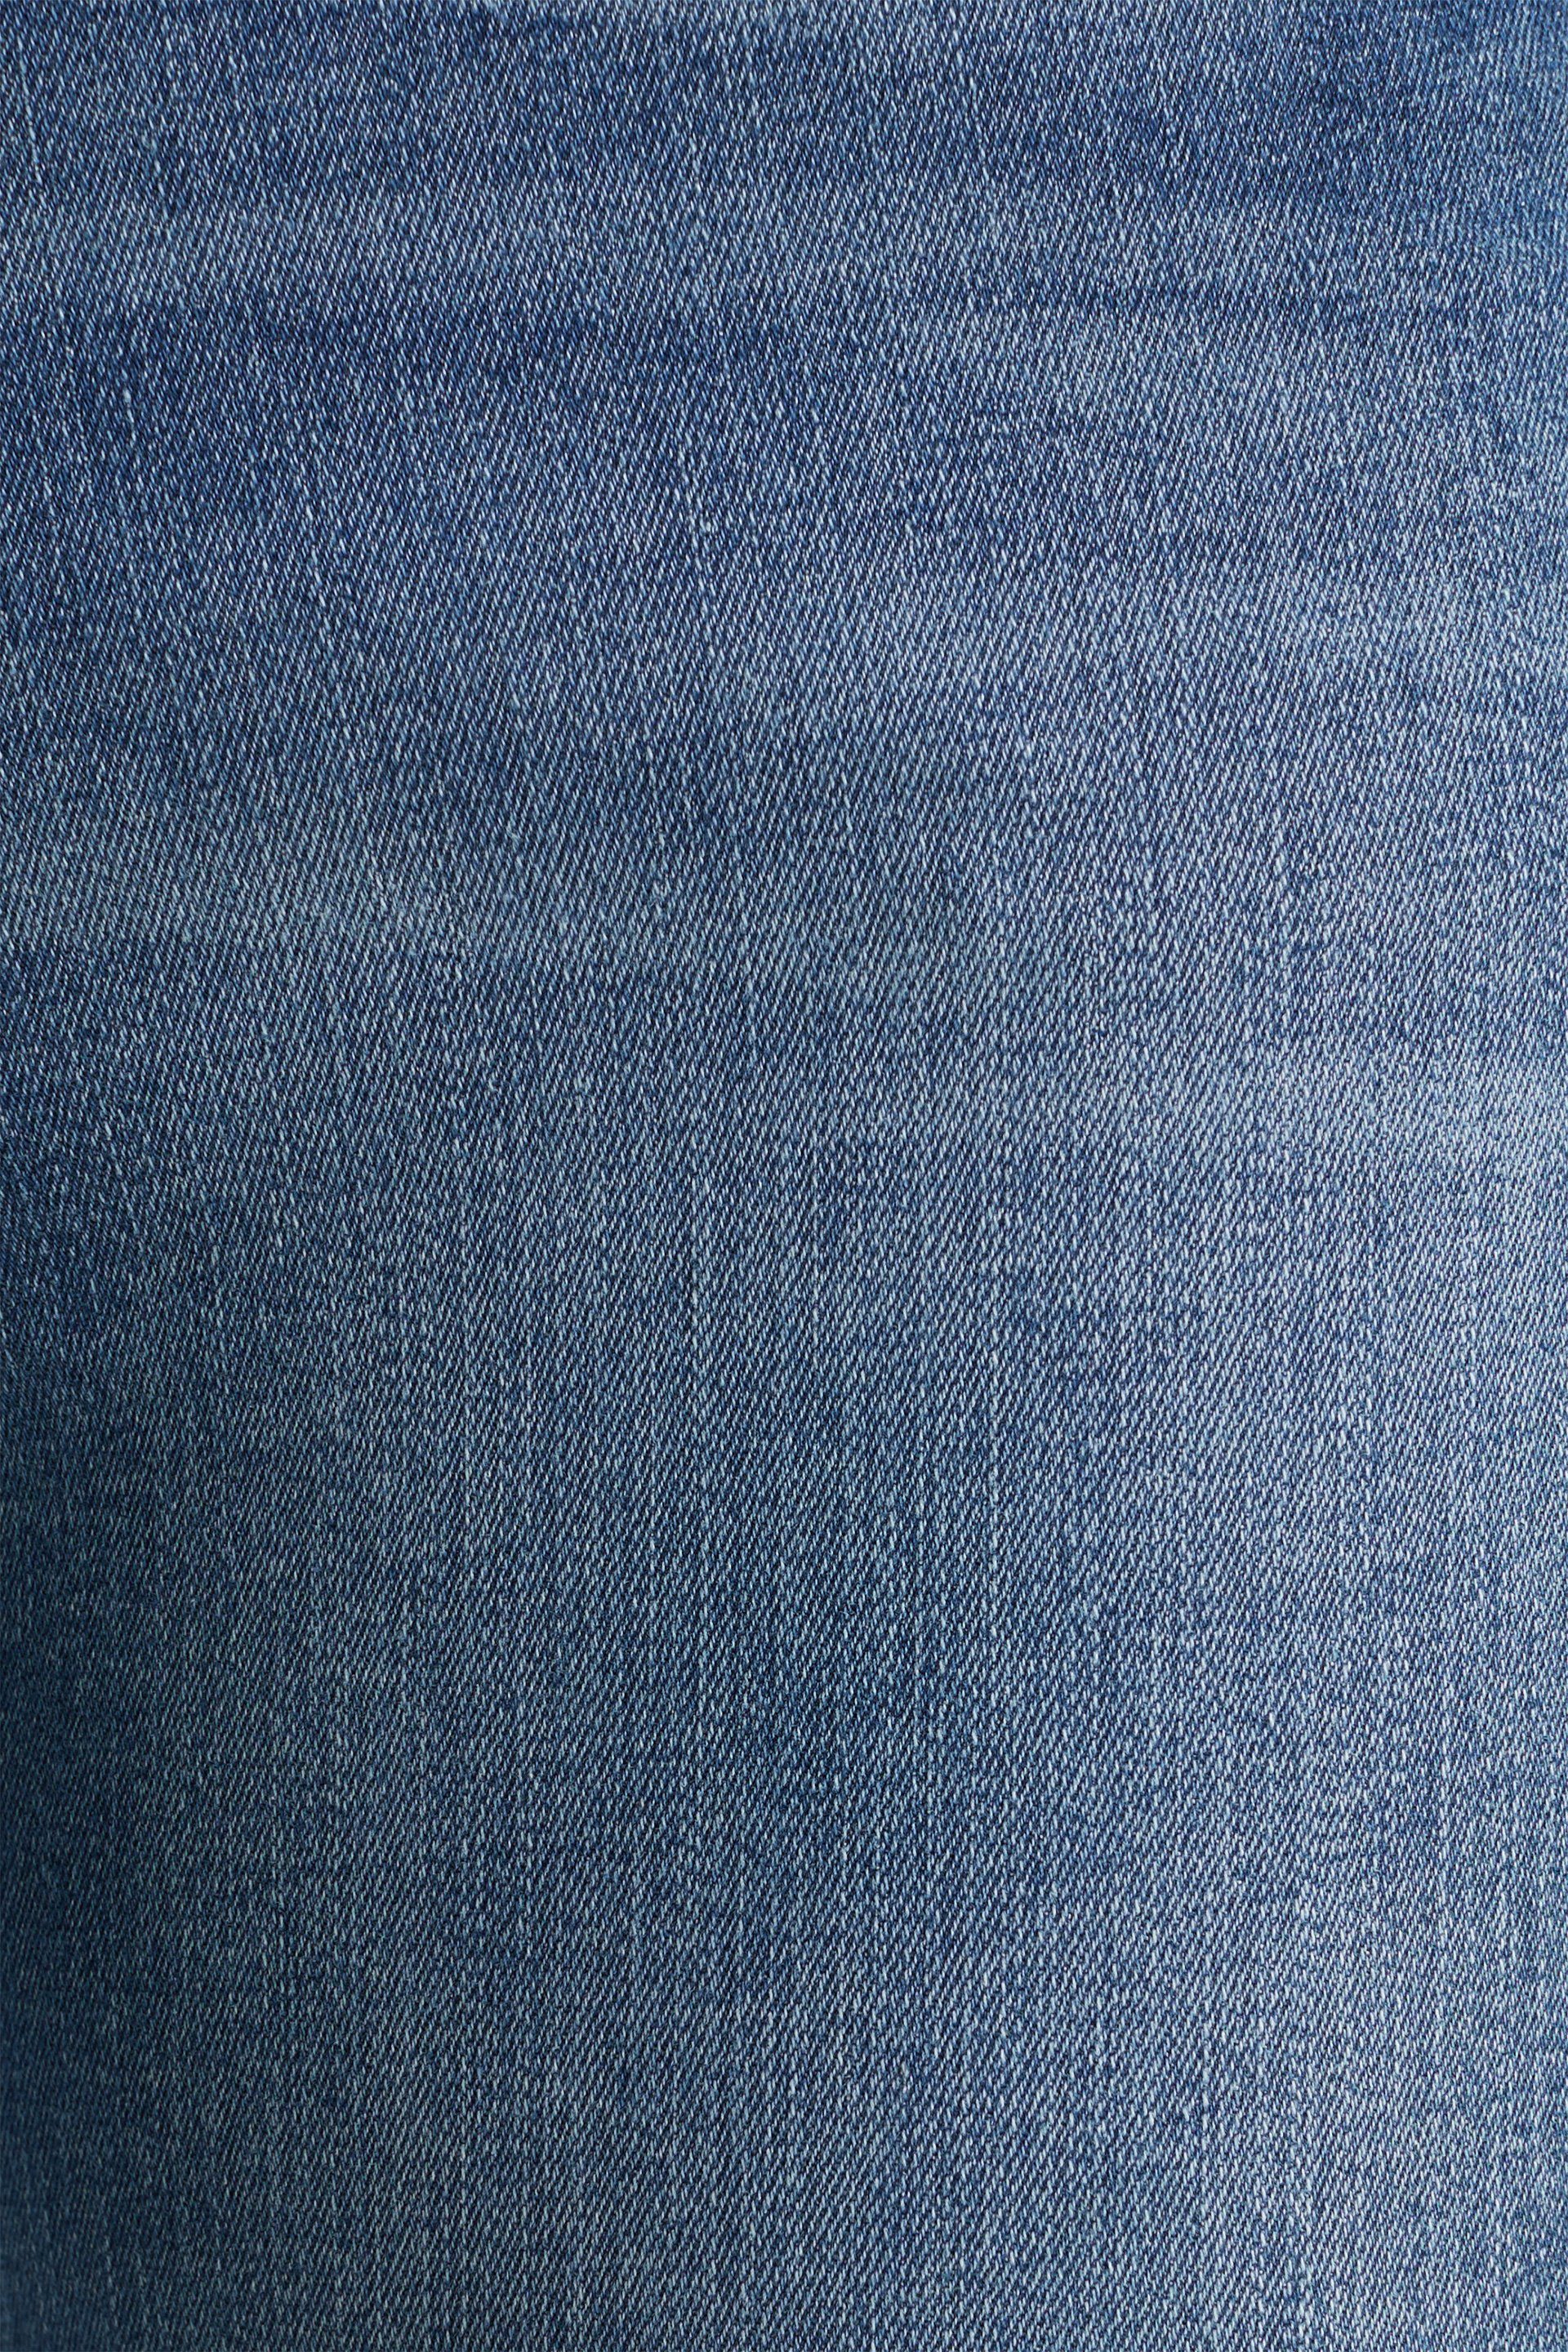 Esprit Stoffhose medium wash blue